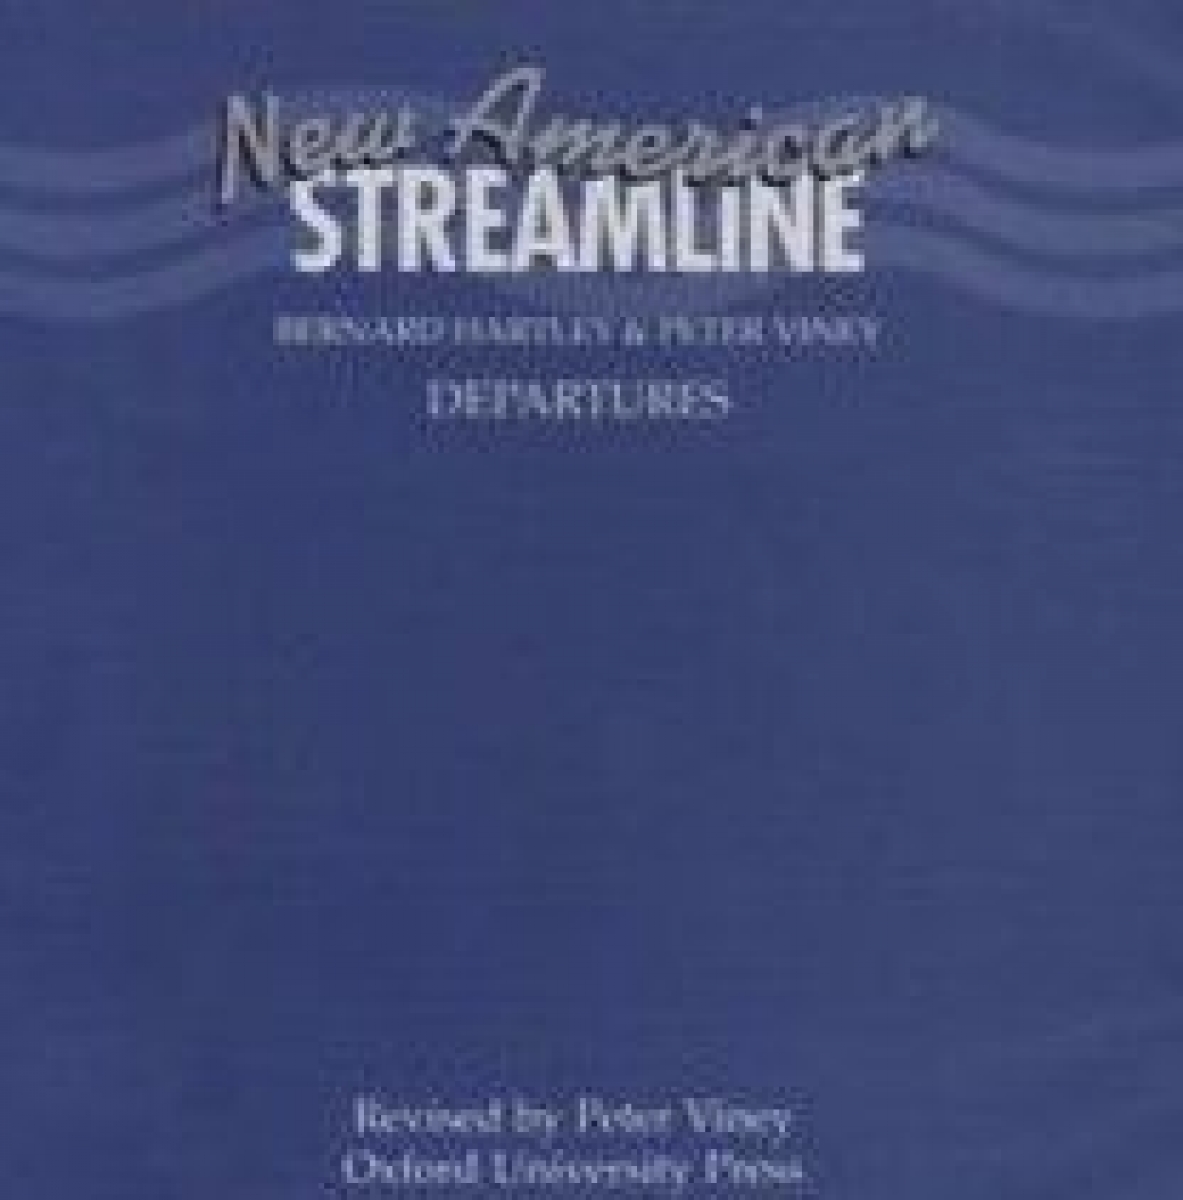 Peter Viney, Bernard Hartley New American Streamline Departures Compact Discs (2) 